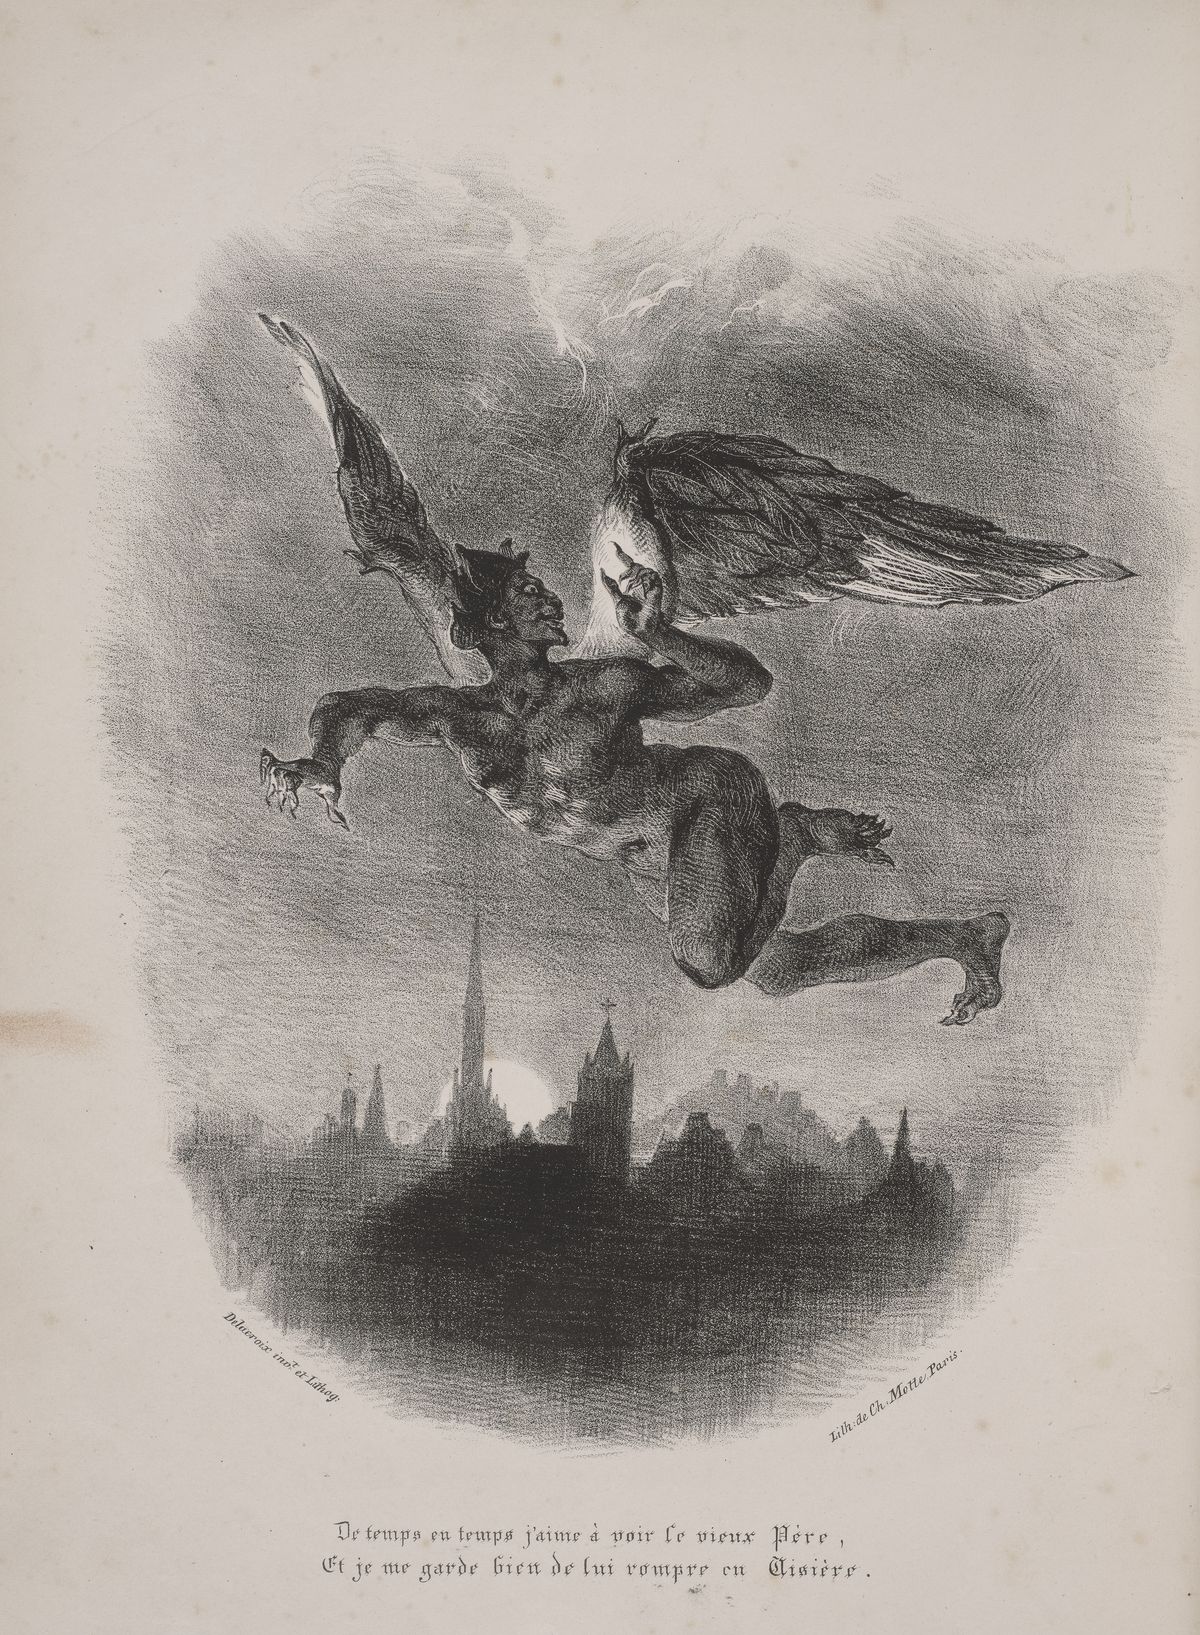  Méphistophélès dans les airs. Eugène DELACROIX (1798 - 1863) 1828. Musée Eugène Delacroix